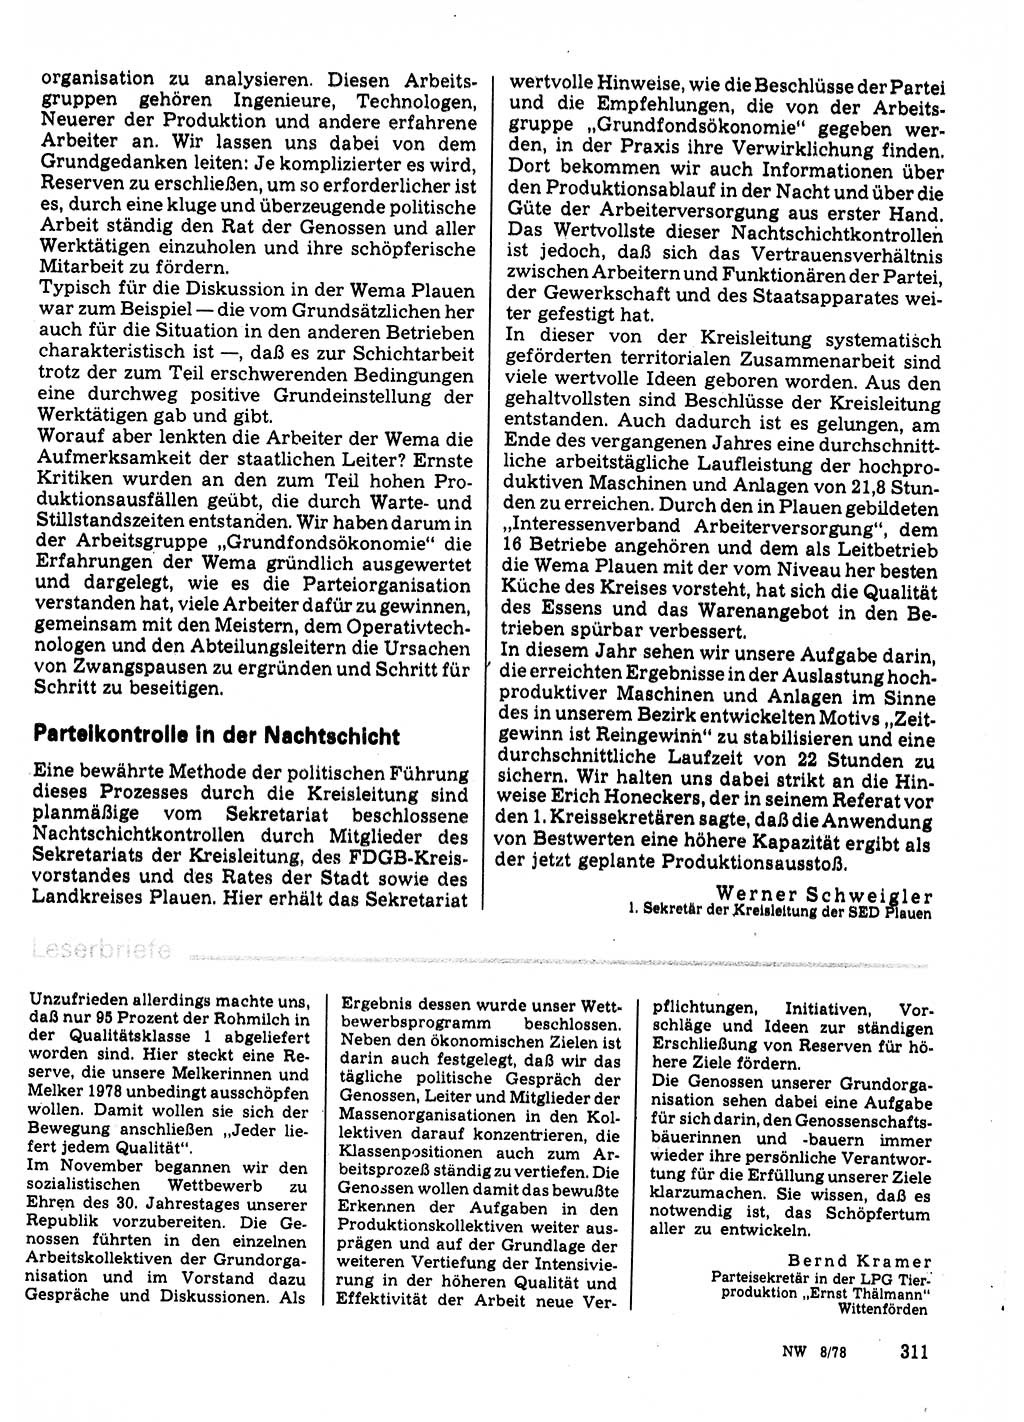 Neuer Weg (NW), Organ des Zentralkomitees (ZK) der SED (Sozialistische Einheitspartei Deutschlands) für Fragen des Parteilebens, 33. Jahrgang [Deutsche Demokratische Republik (DDR)] 1978, Seite 311 (NW ZK SED DDR 1978, S. 311)